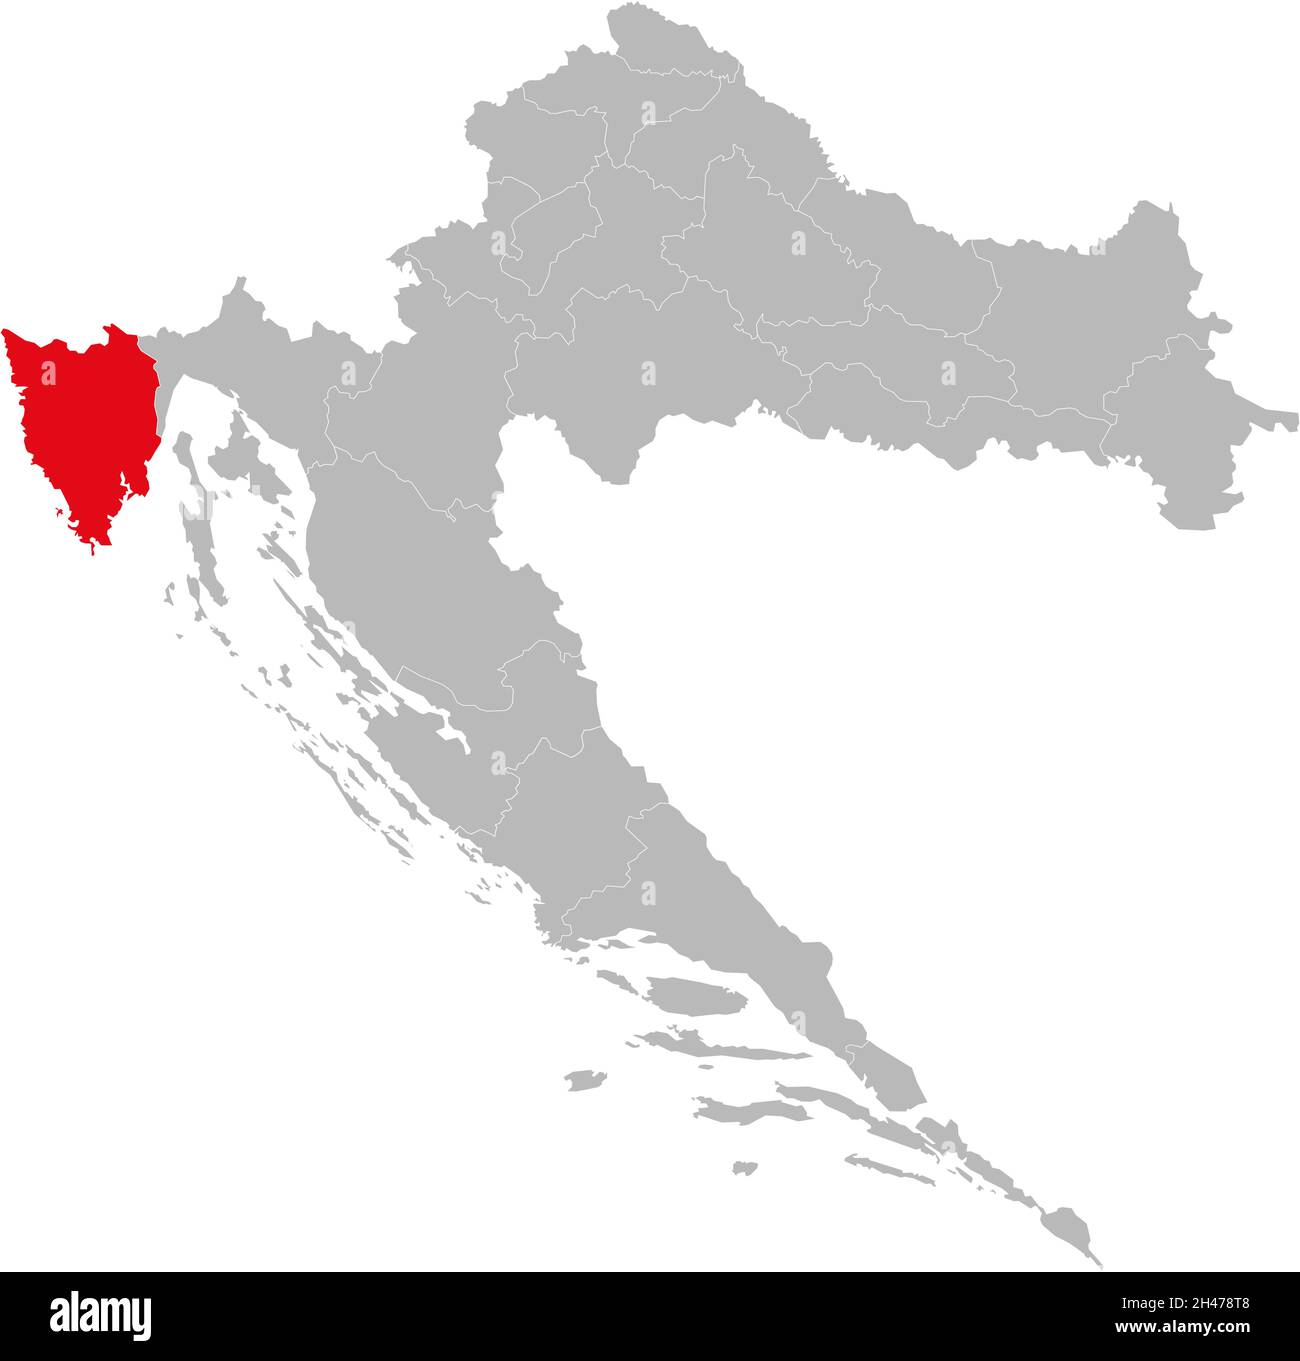 Istrien County auf Kroatien Karte hervorgehoben. Hellgrauer Hintergrund. Geschäftskonzepte und -Hintergründe. Stock Vektor